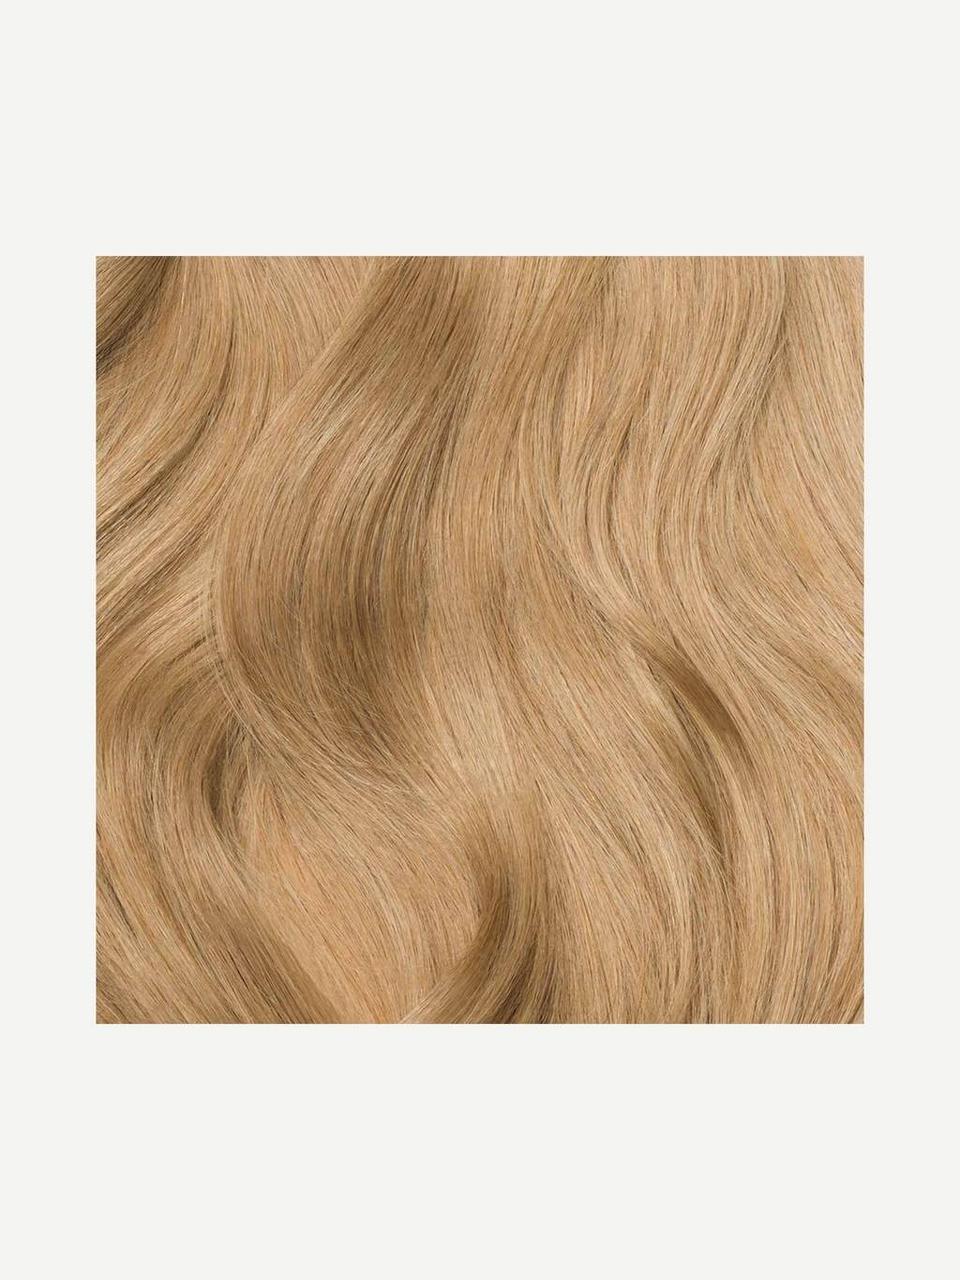 Волосся для нарощування Luxy Hair Dirty Blonde 18 натуральне 220 грамм ( в упаковке)